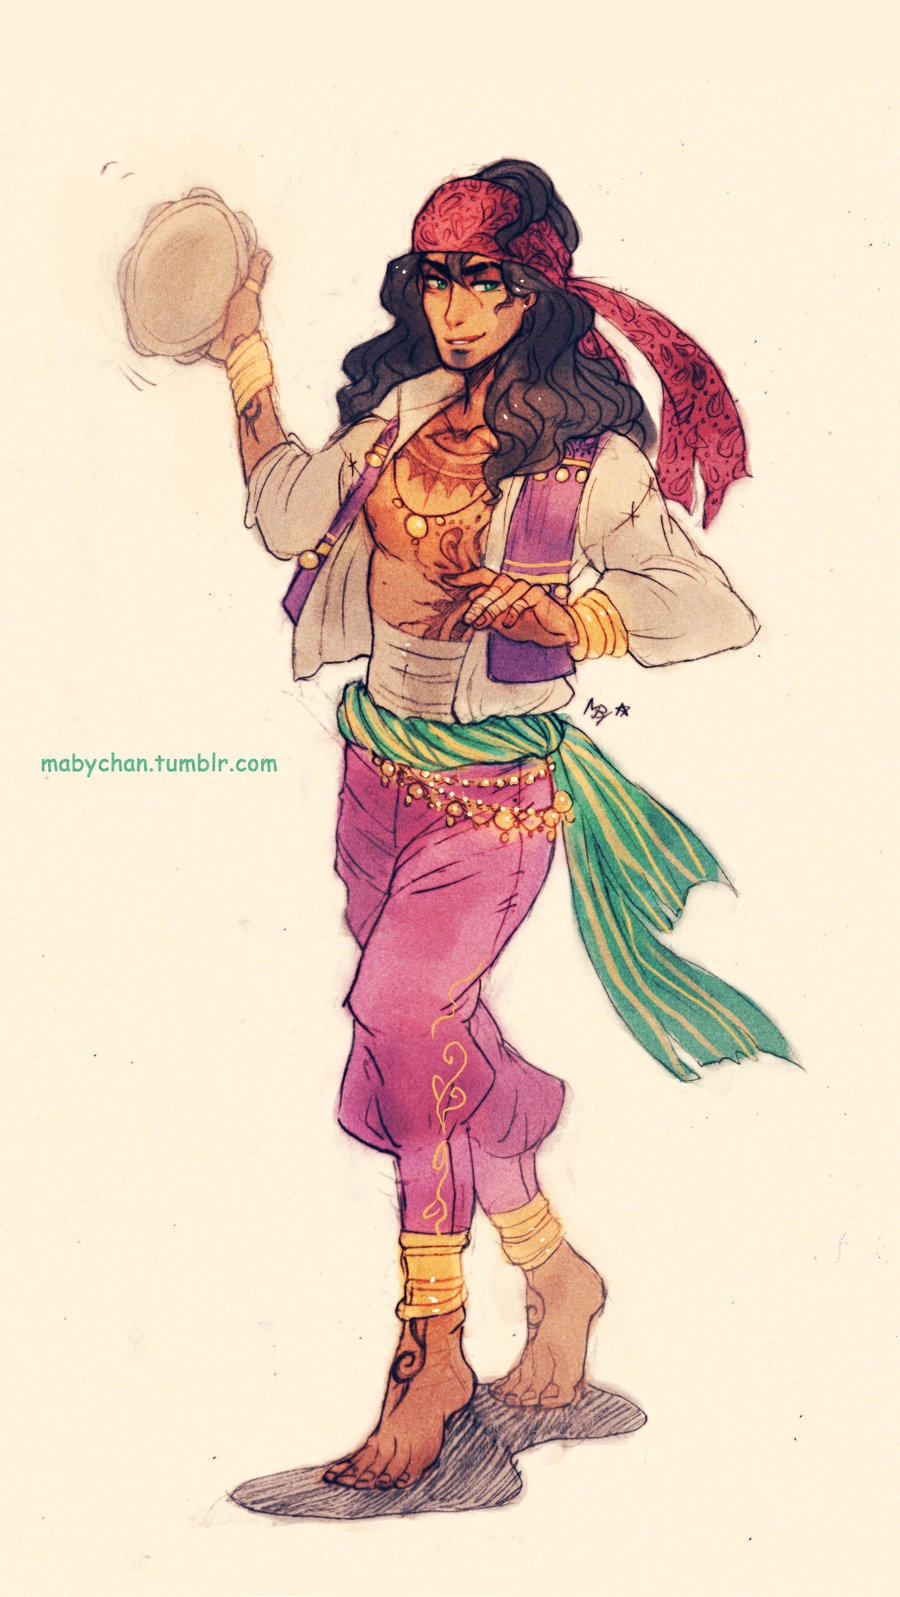 Disney Genderbend Esmeralda